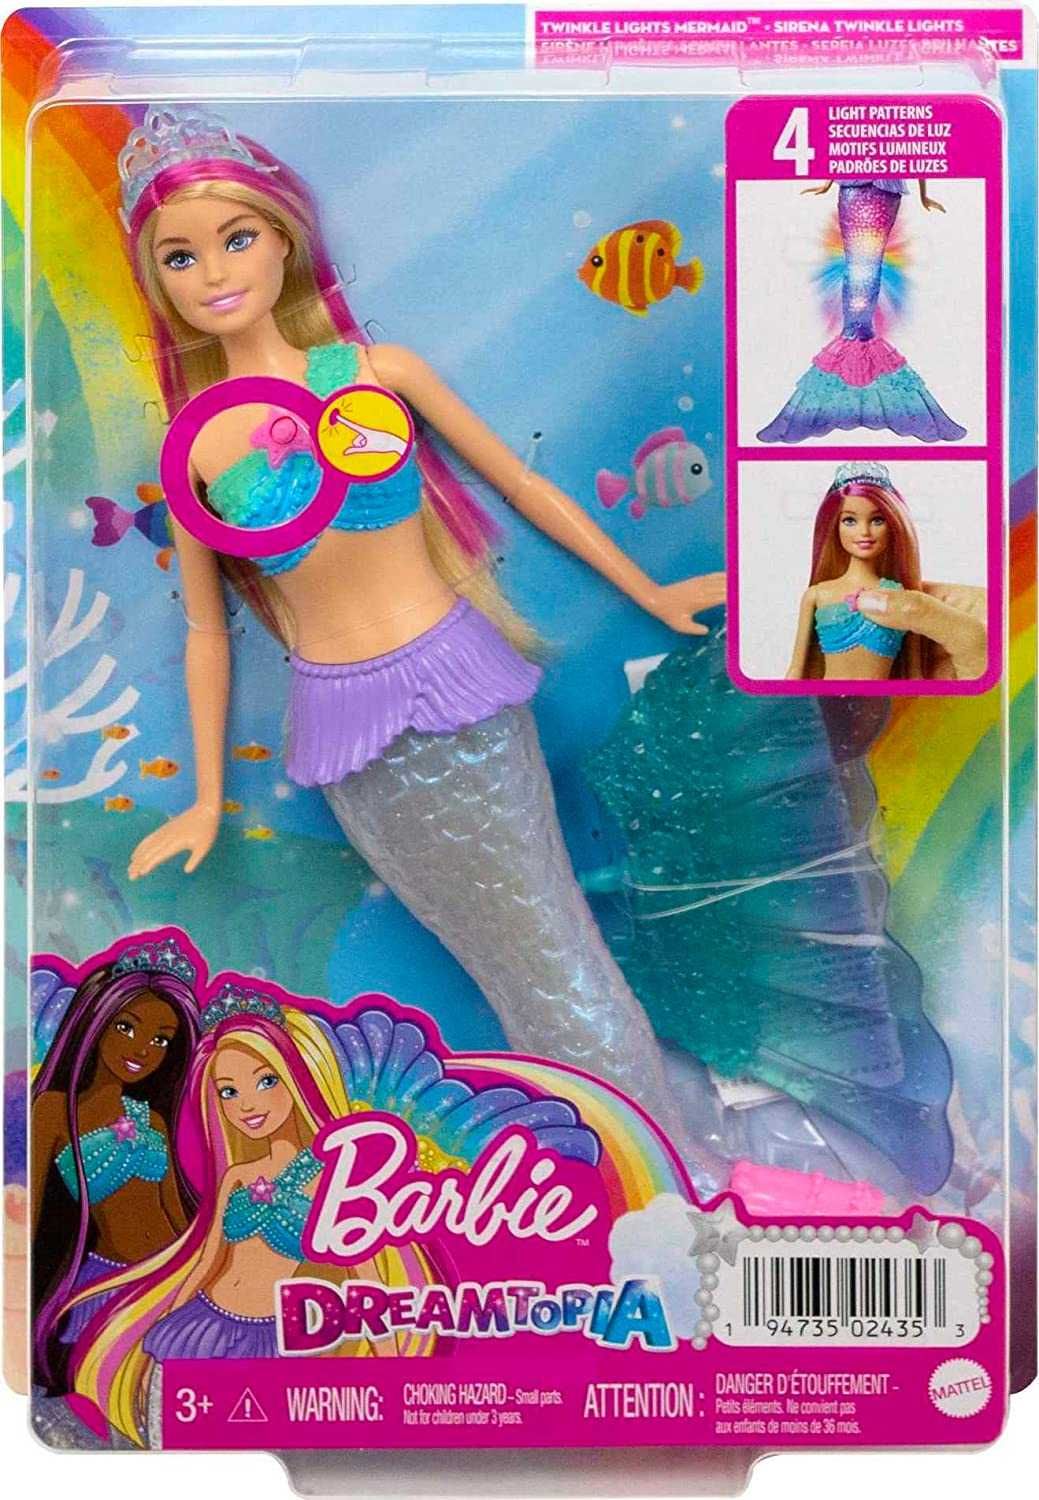 ОРИГИНАЛ! Кукла Барби Русалка с Световыми Эффектами Barbie